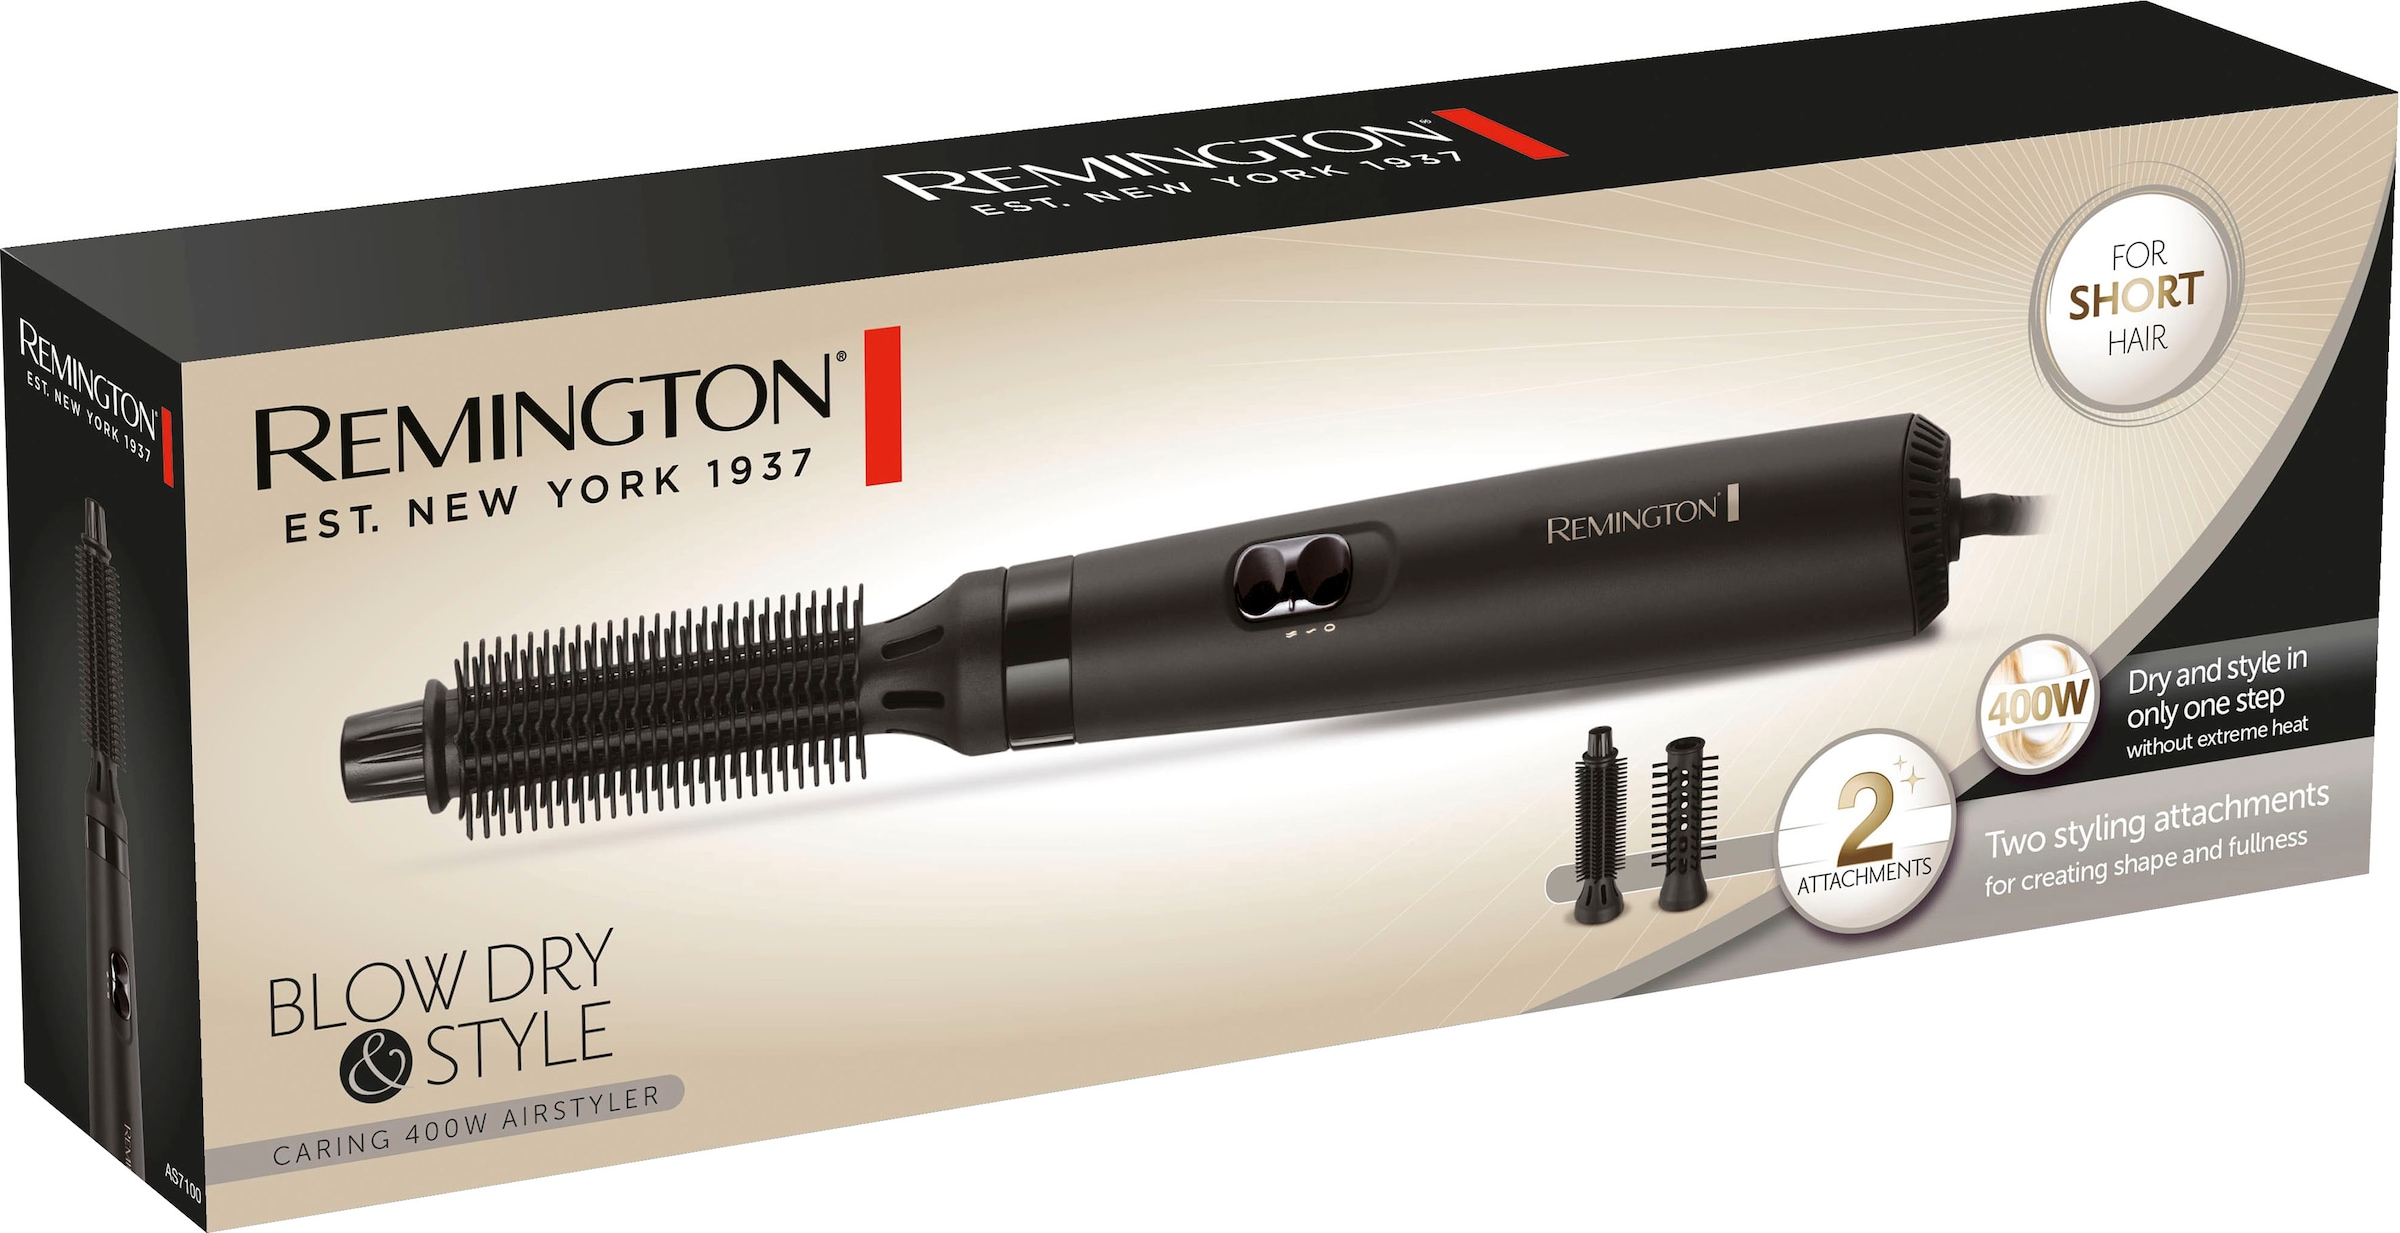 Remington Warmluftbürste »Blow Dry & Style AS7100«, 2 Aufsätze}, 400 Watt, (Airstyler/Rundbürste/Lockenbürste) für kurze Haare